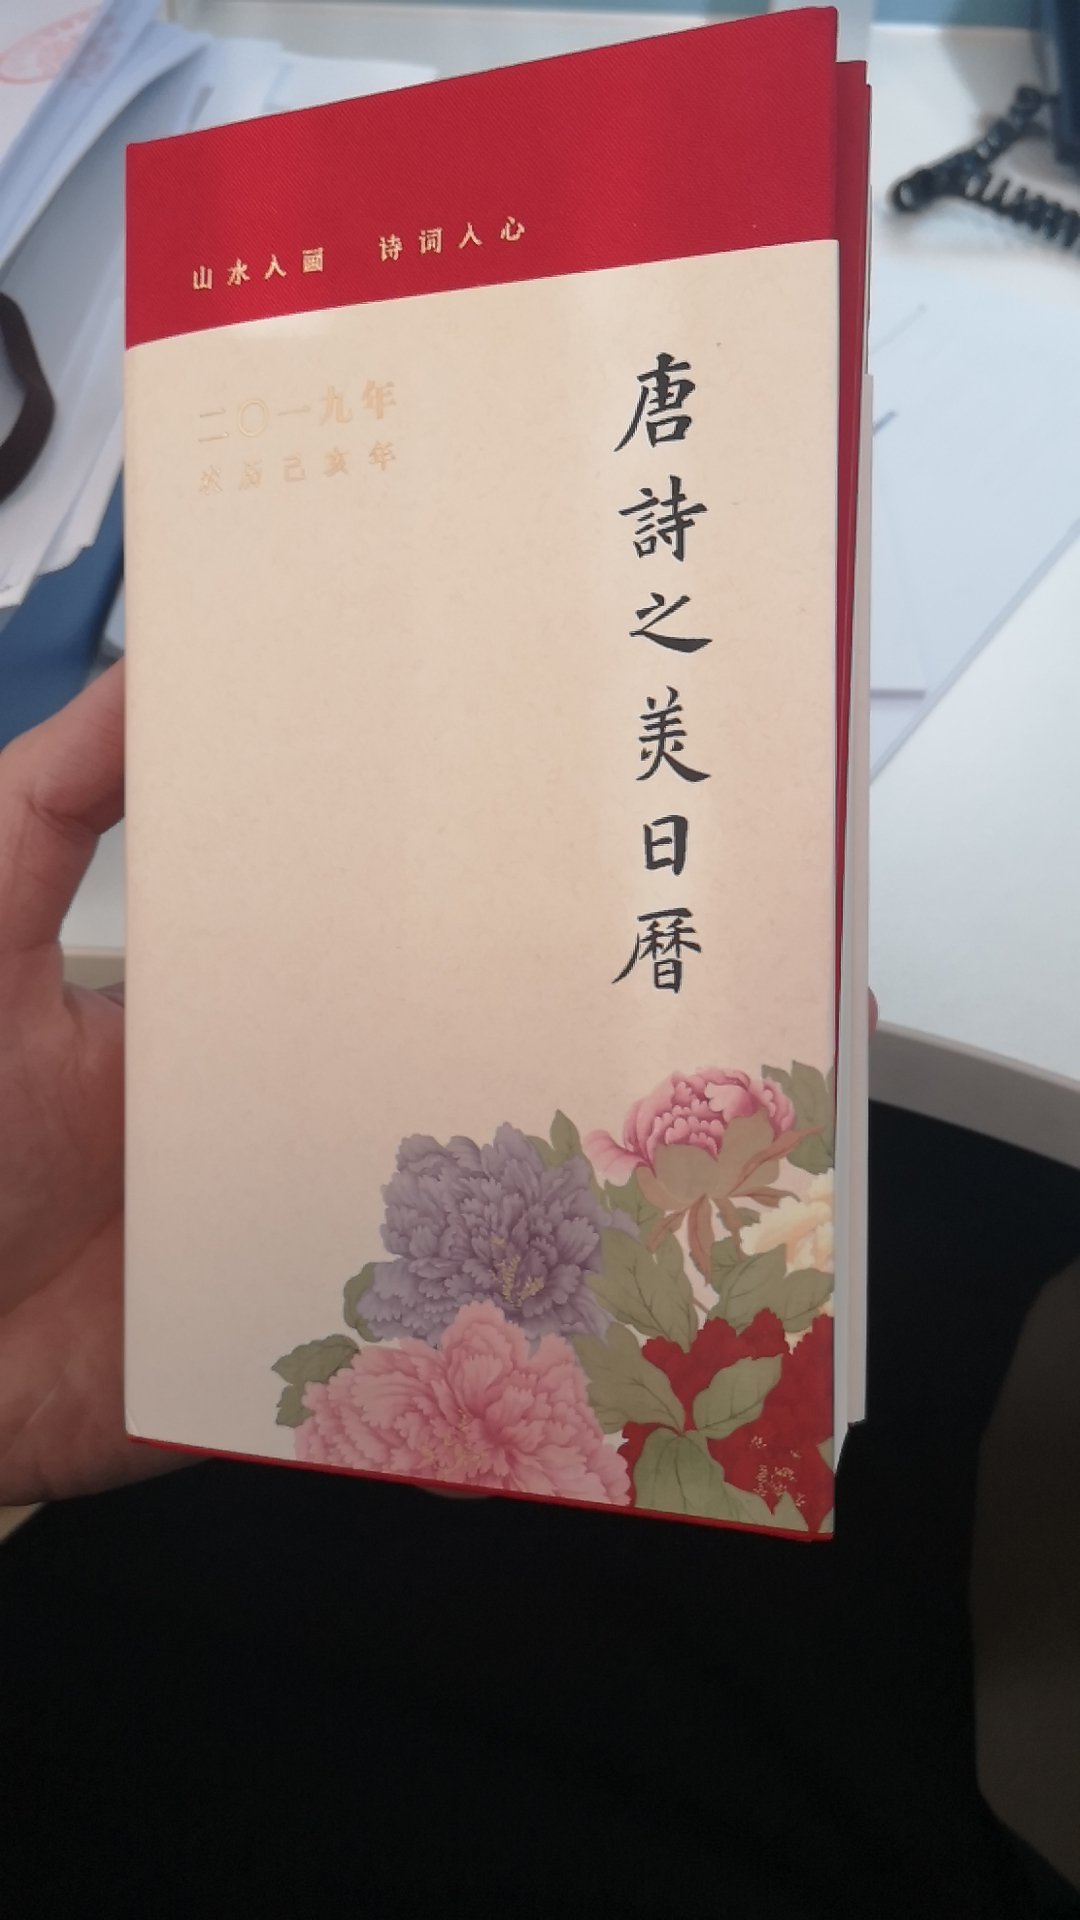 每年一本，中华书局出品，值得。